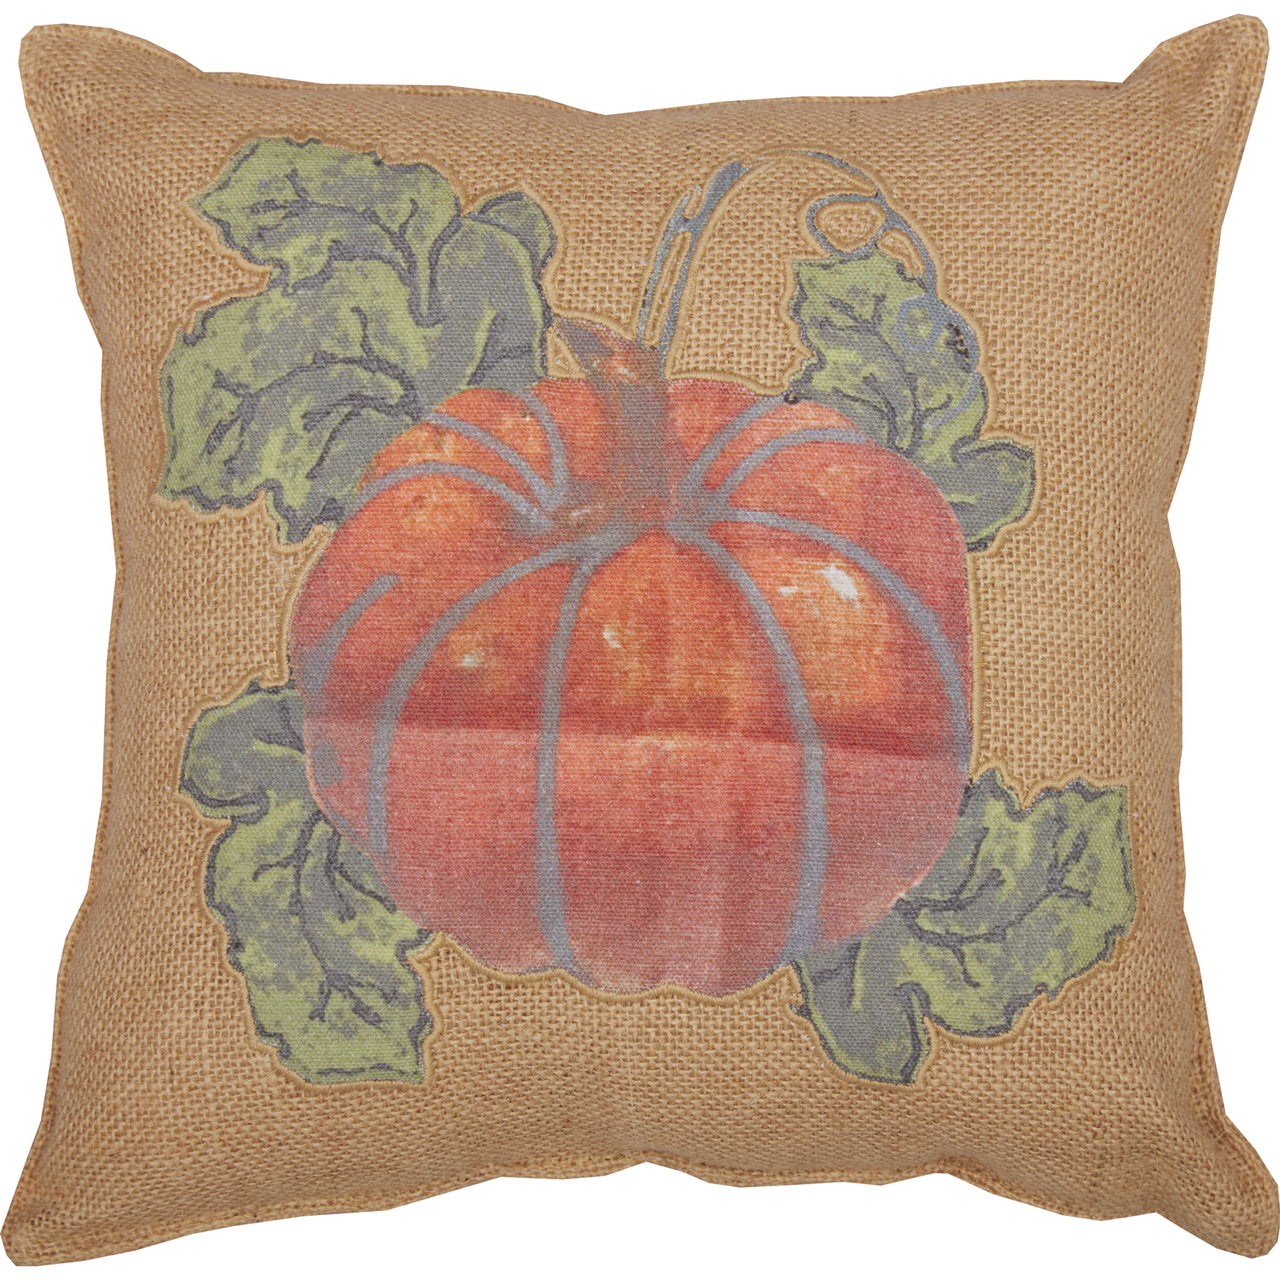 Jute Burlap Natural Harvest Garden Pumpkin Pillow 12x12 VHC Brands